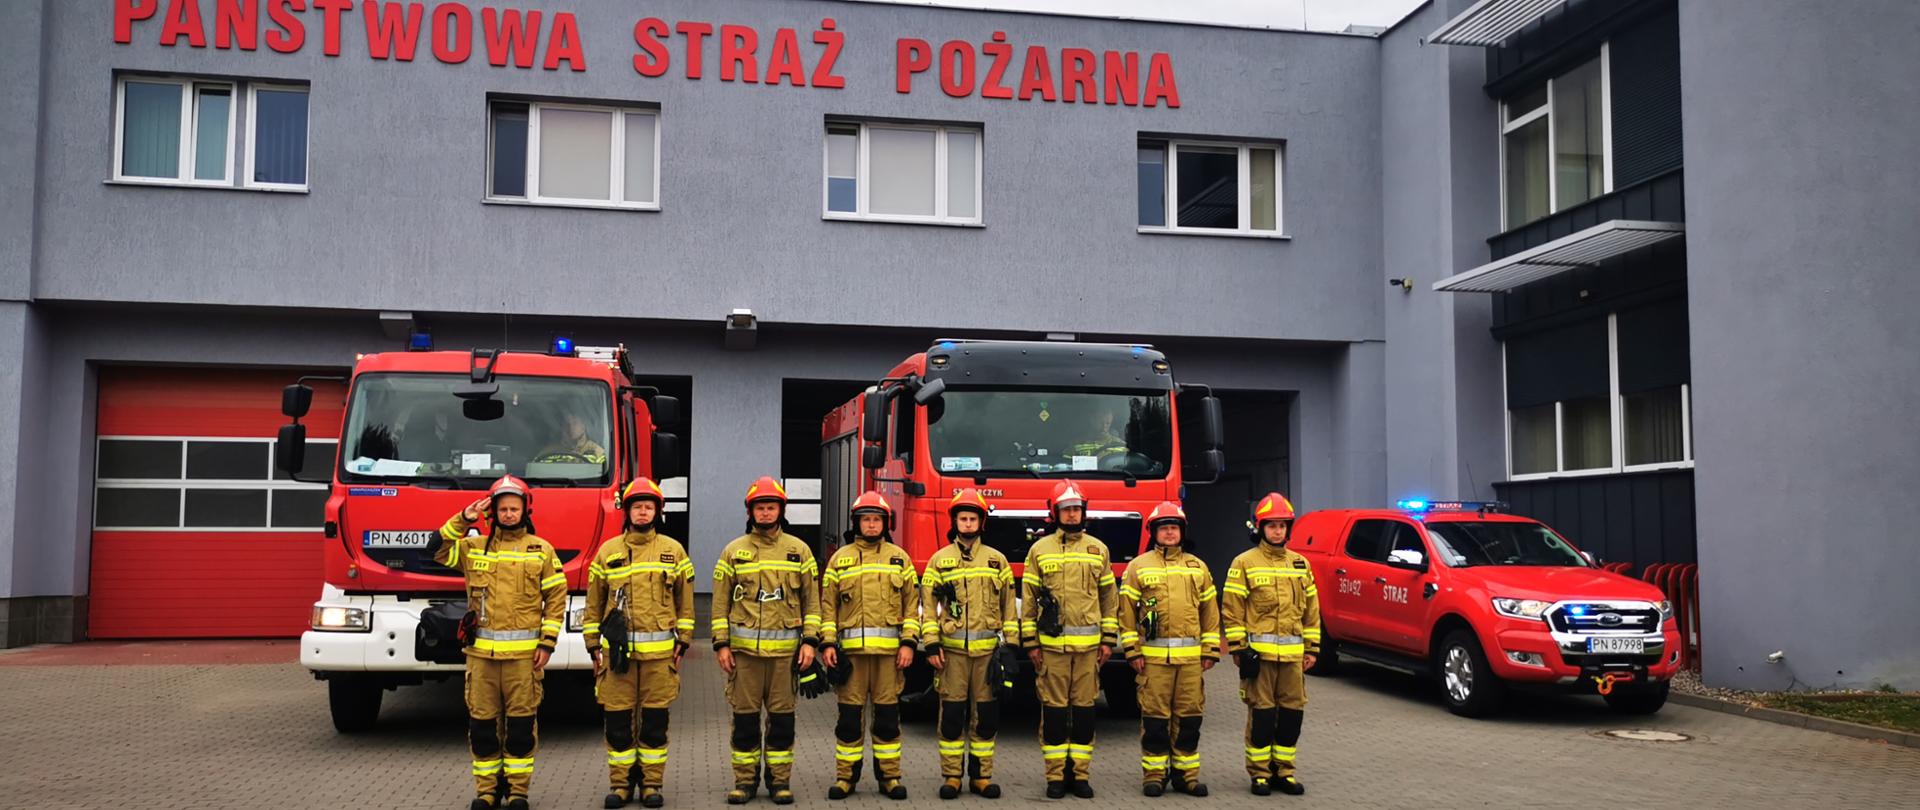 Na zdjęciu widać strażaków i samochody strażackie przed budynkiem jednostki podczas uroczystego apelu z okazji rocznicy Powstania Warszawskiego